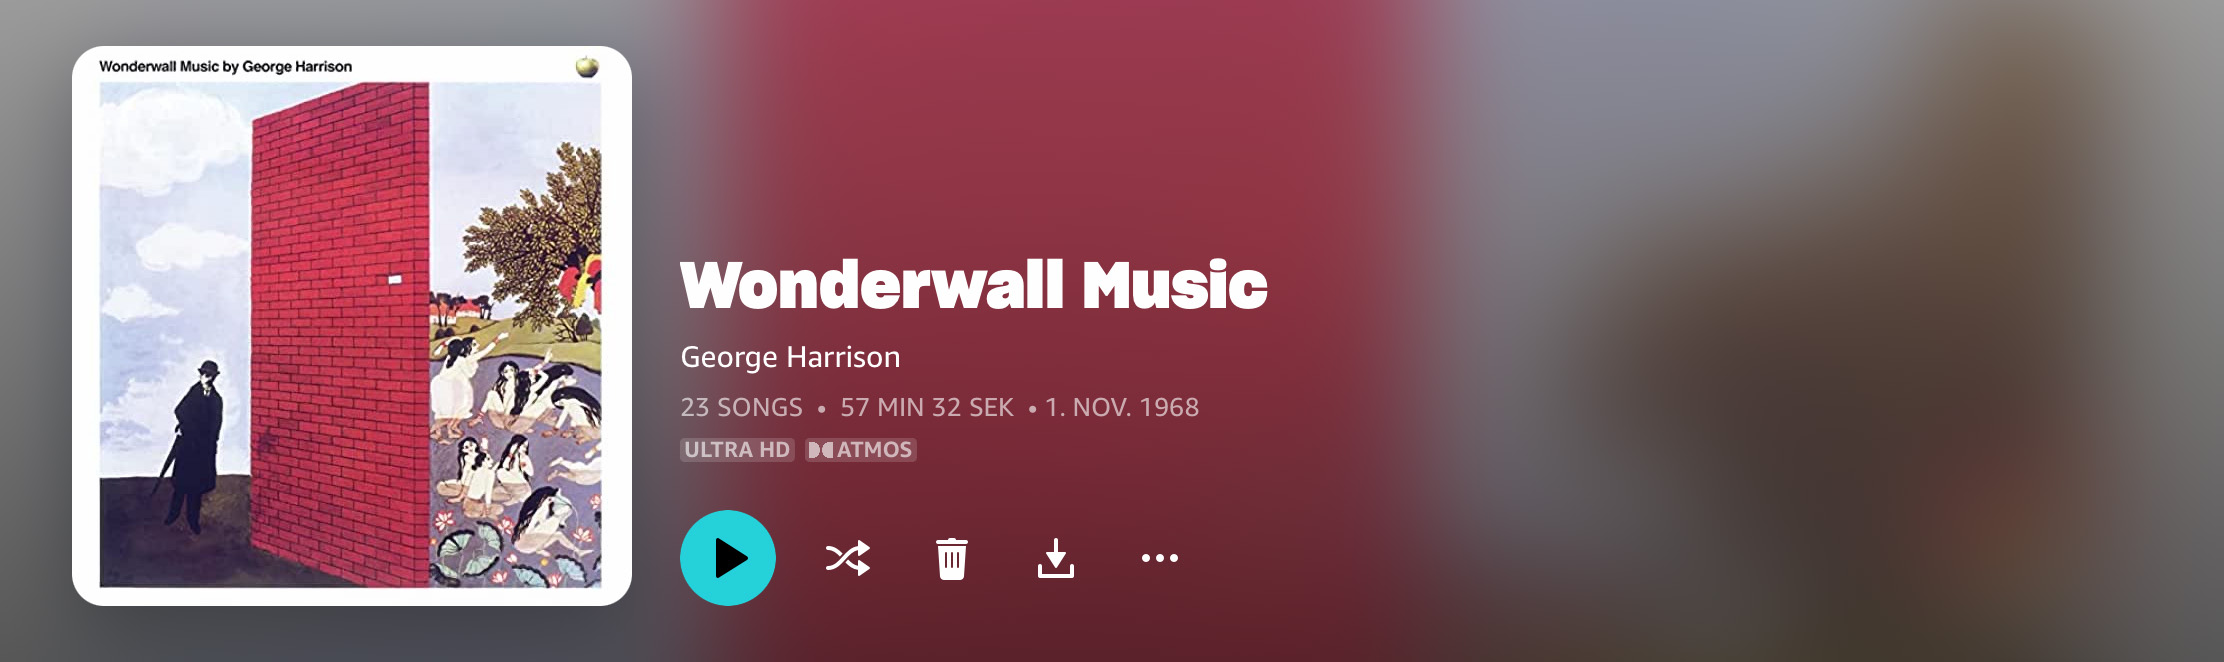 George Harrison Wonderwall Music Dolby Atmos